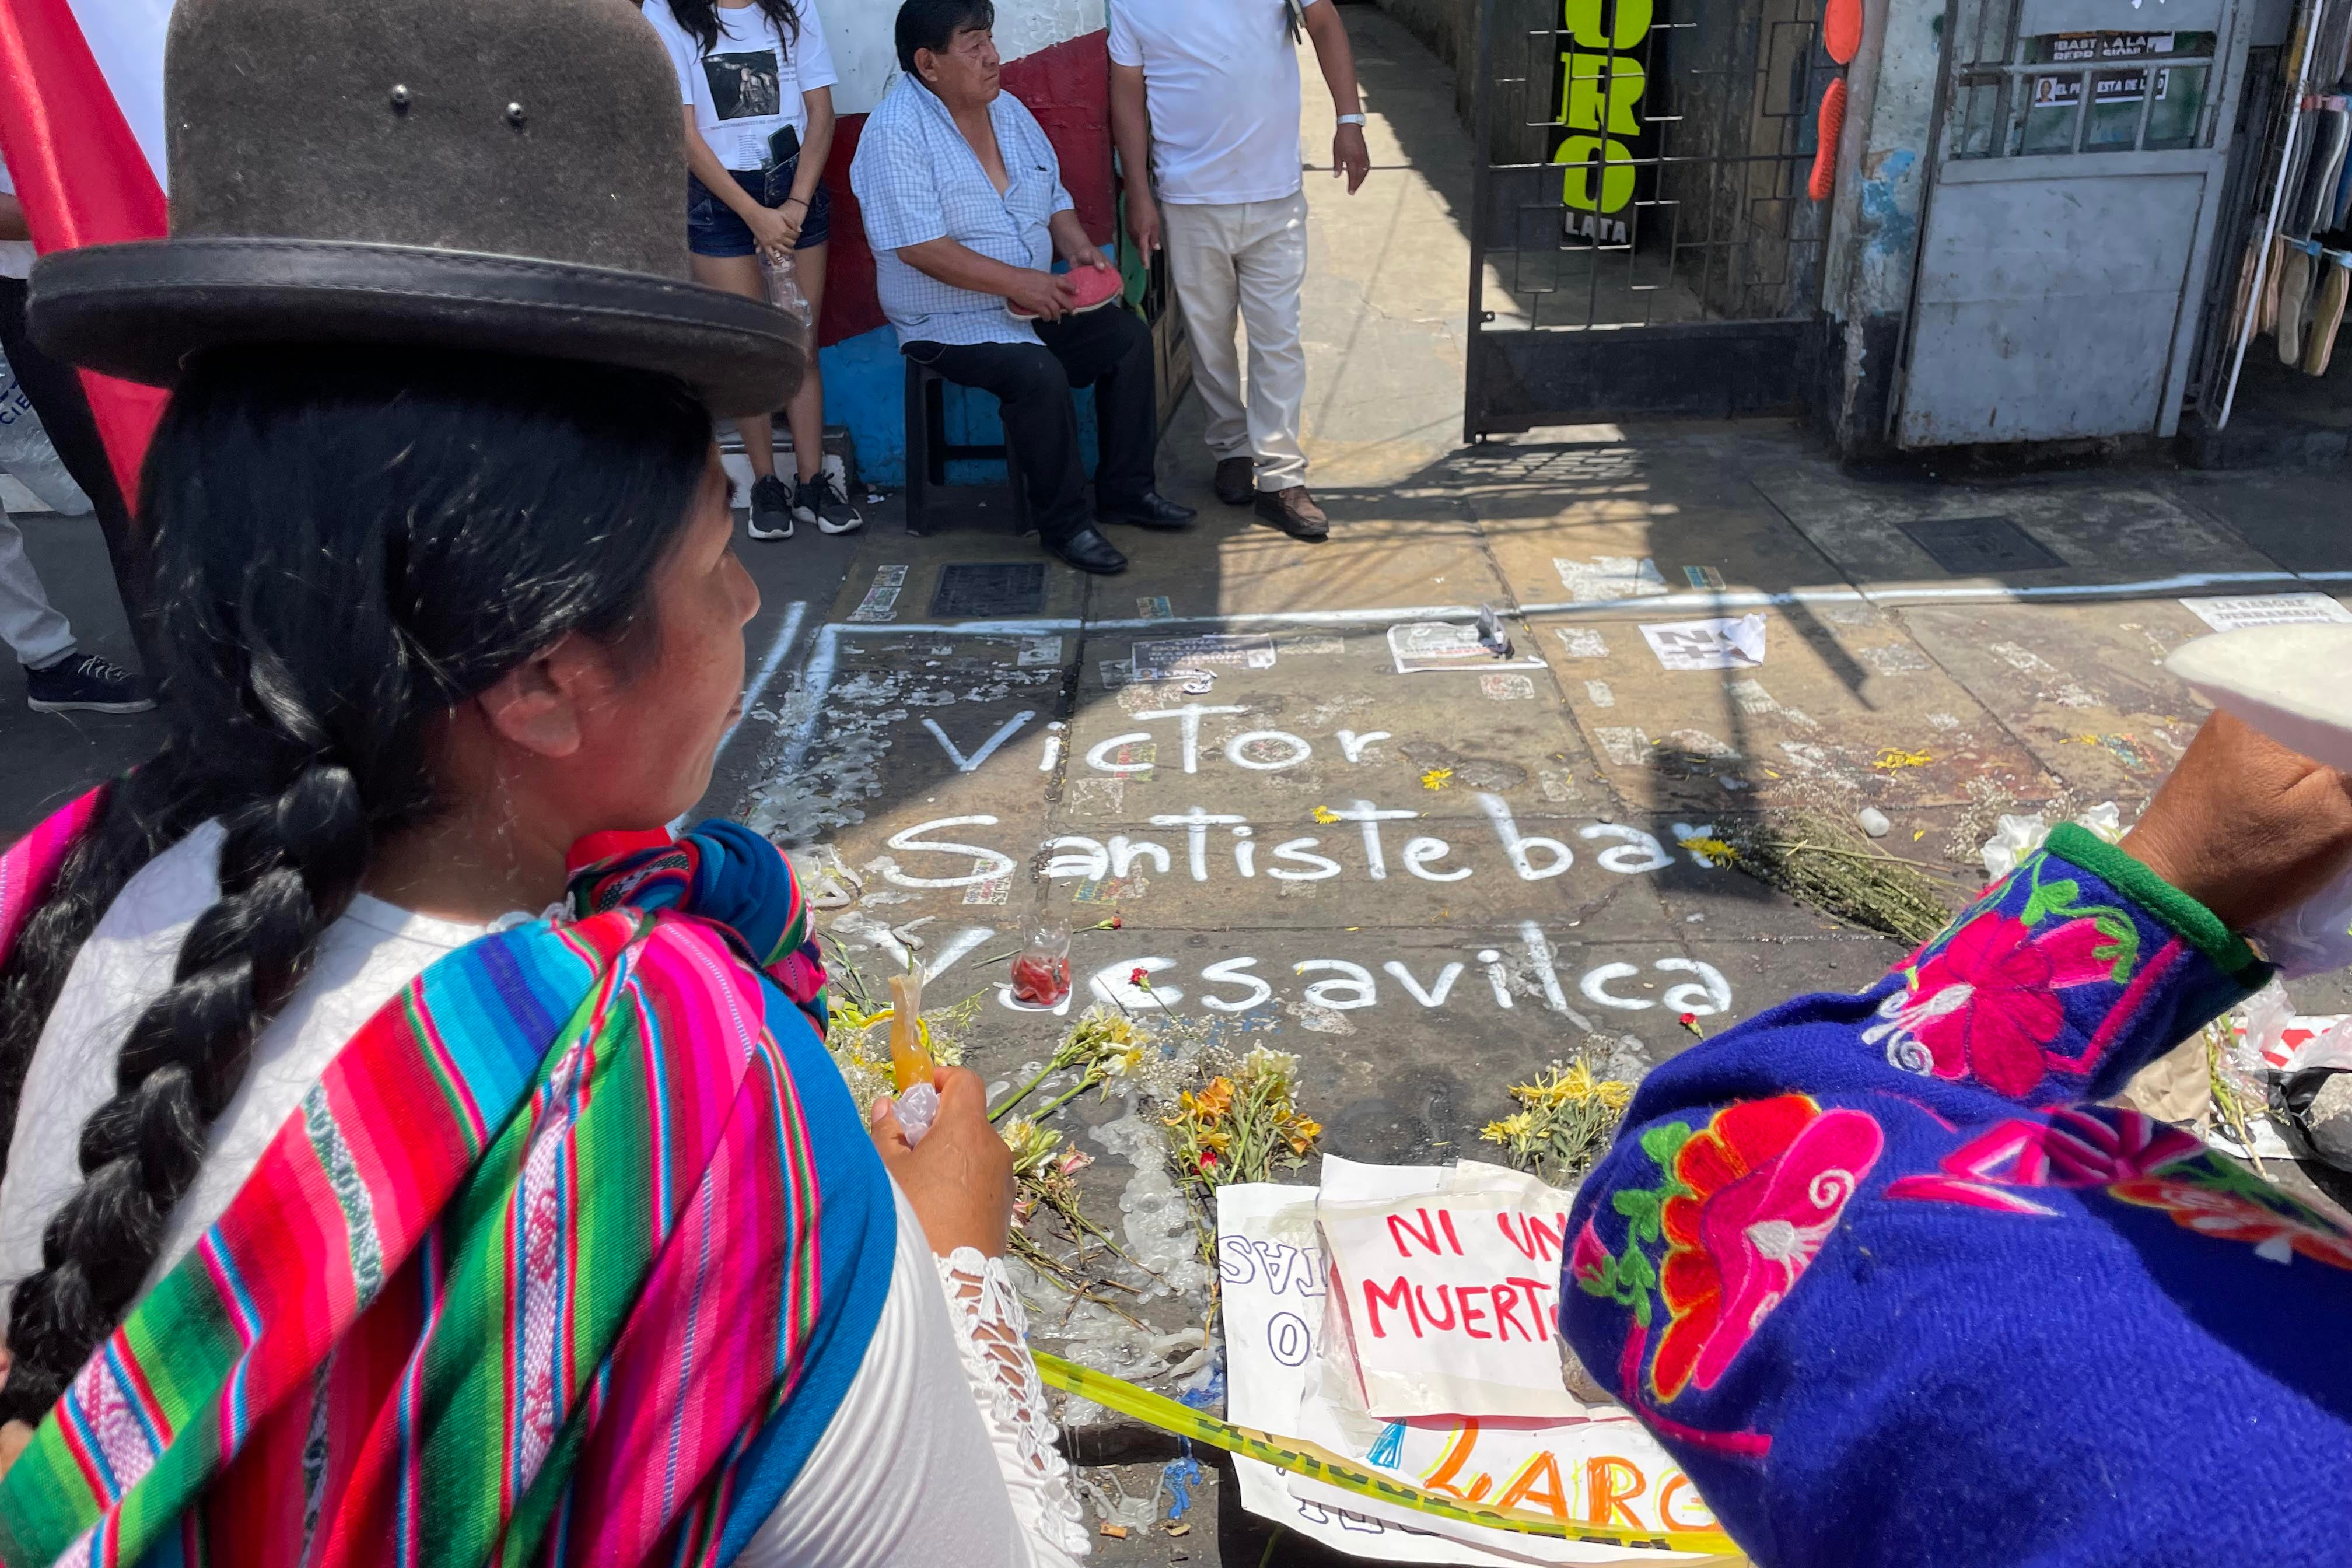 An Indigenous woman looks at a memorial to Víctor Santisteban Yacsavilca